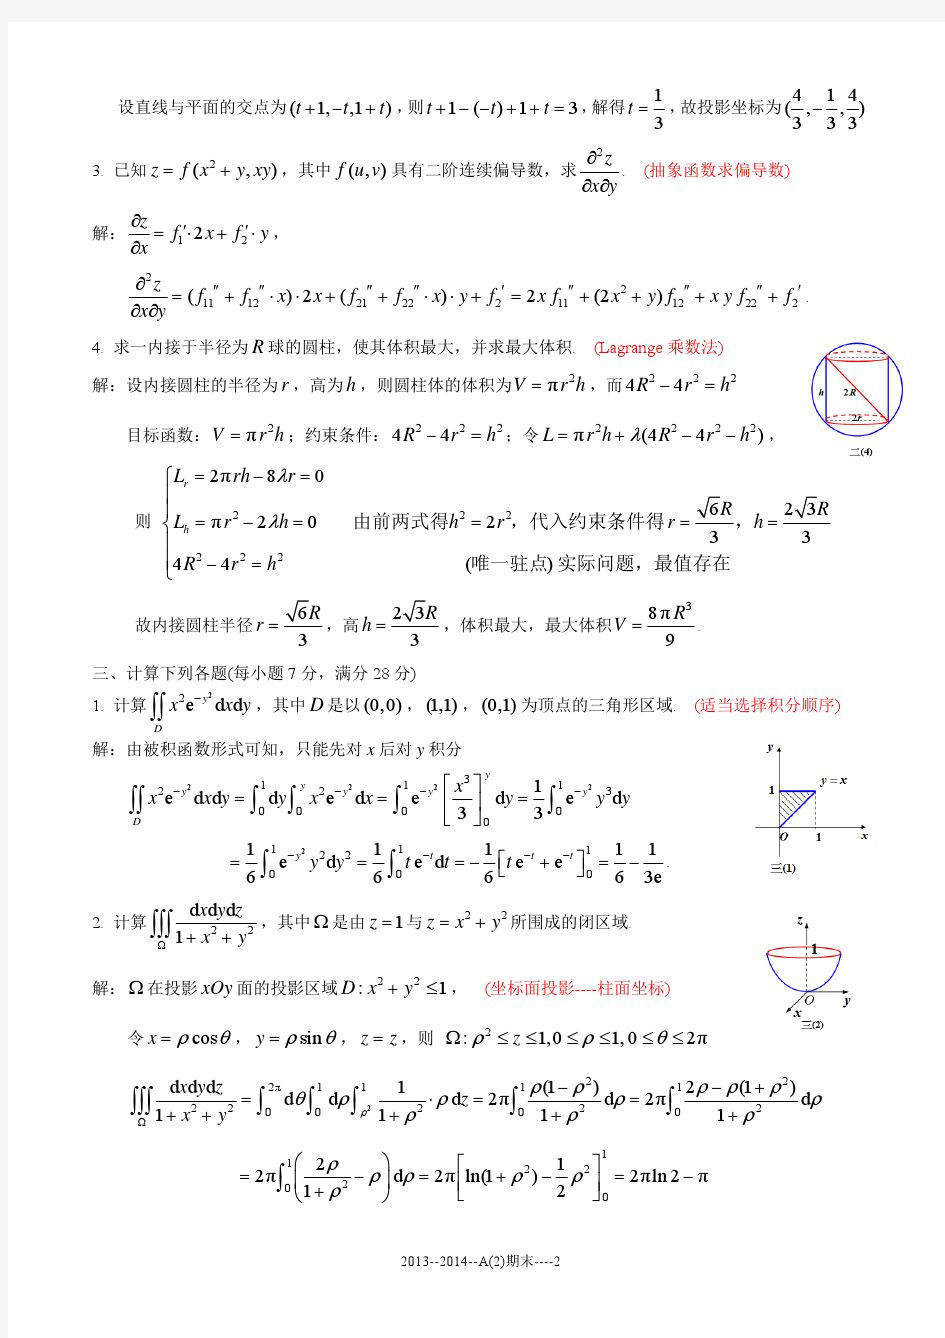 2013-2014 高等数学A(2) A 卷 - 答案(3)